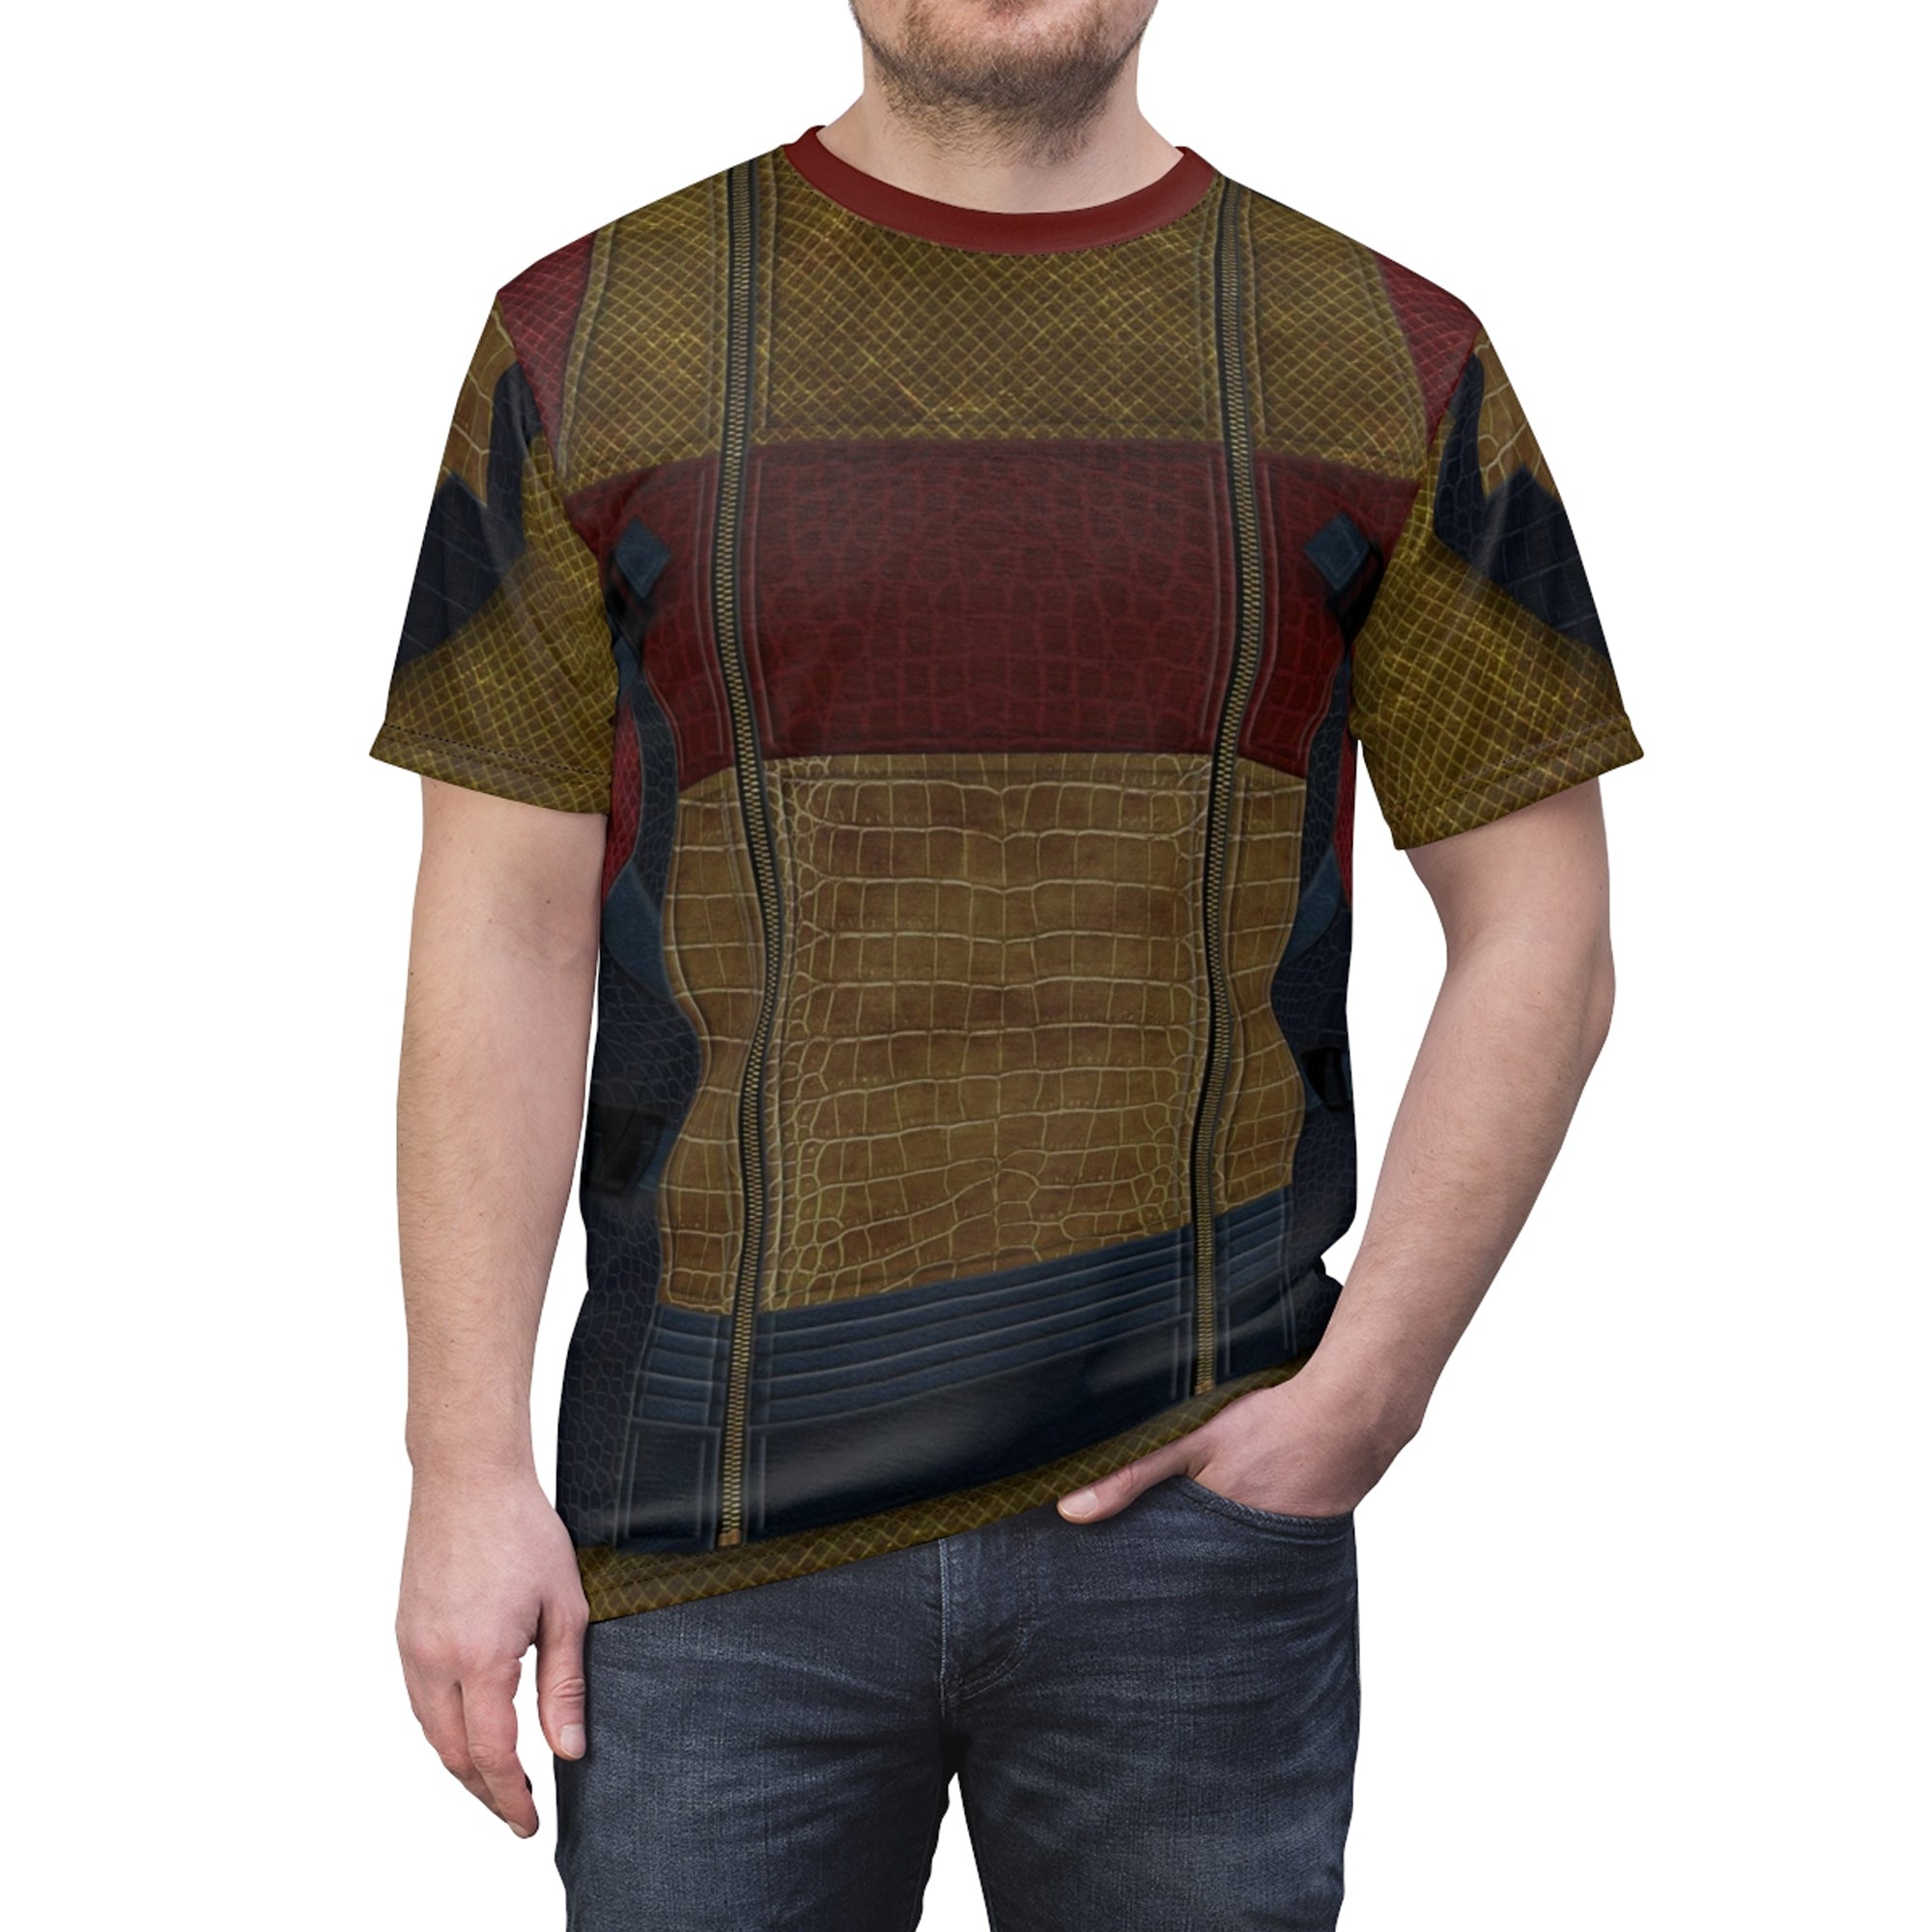 Jay Descendants 3 Costume T-shirt For Men